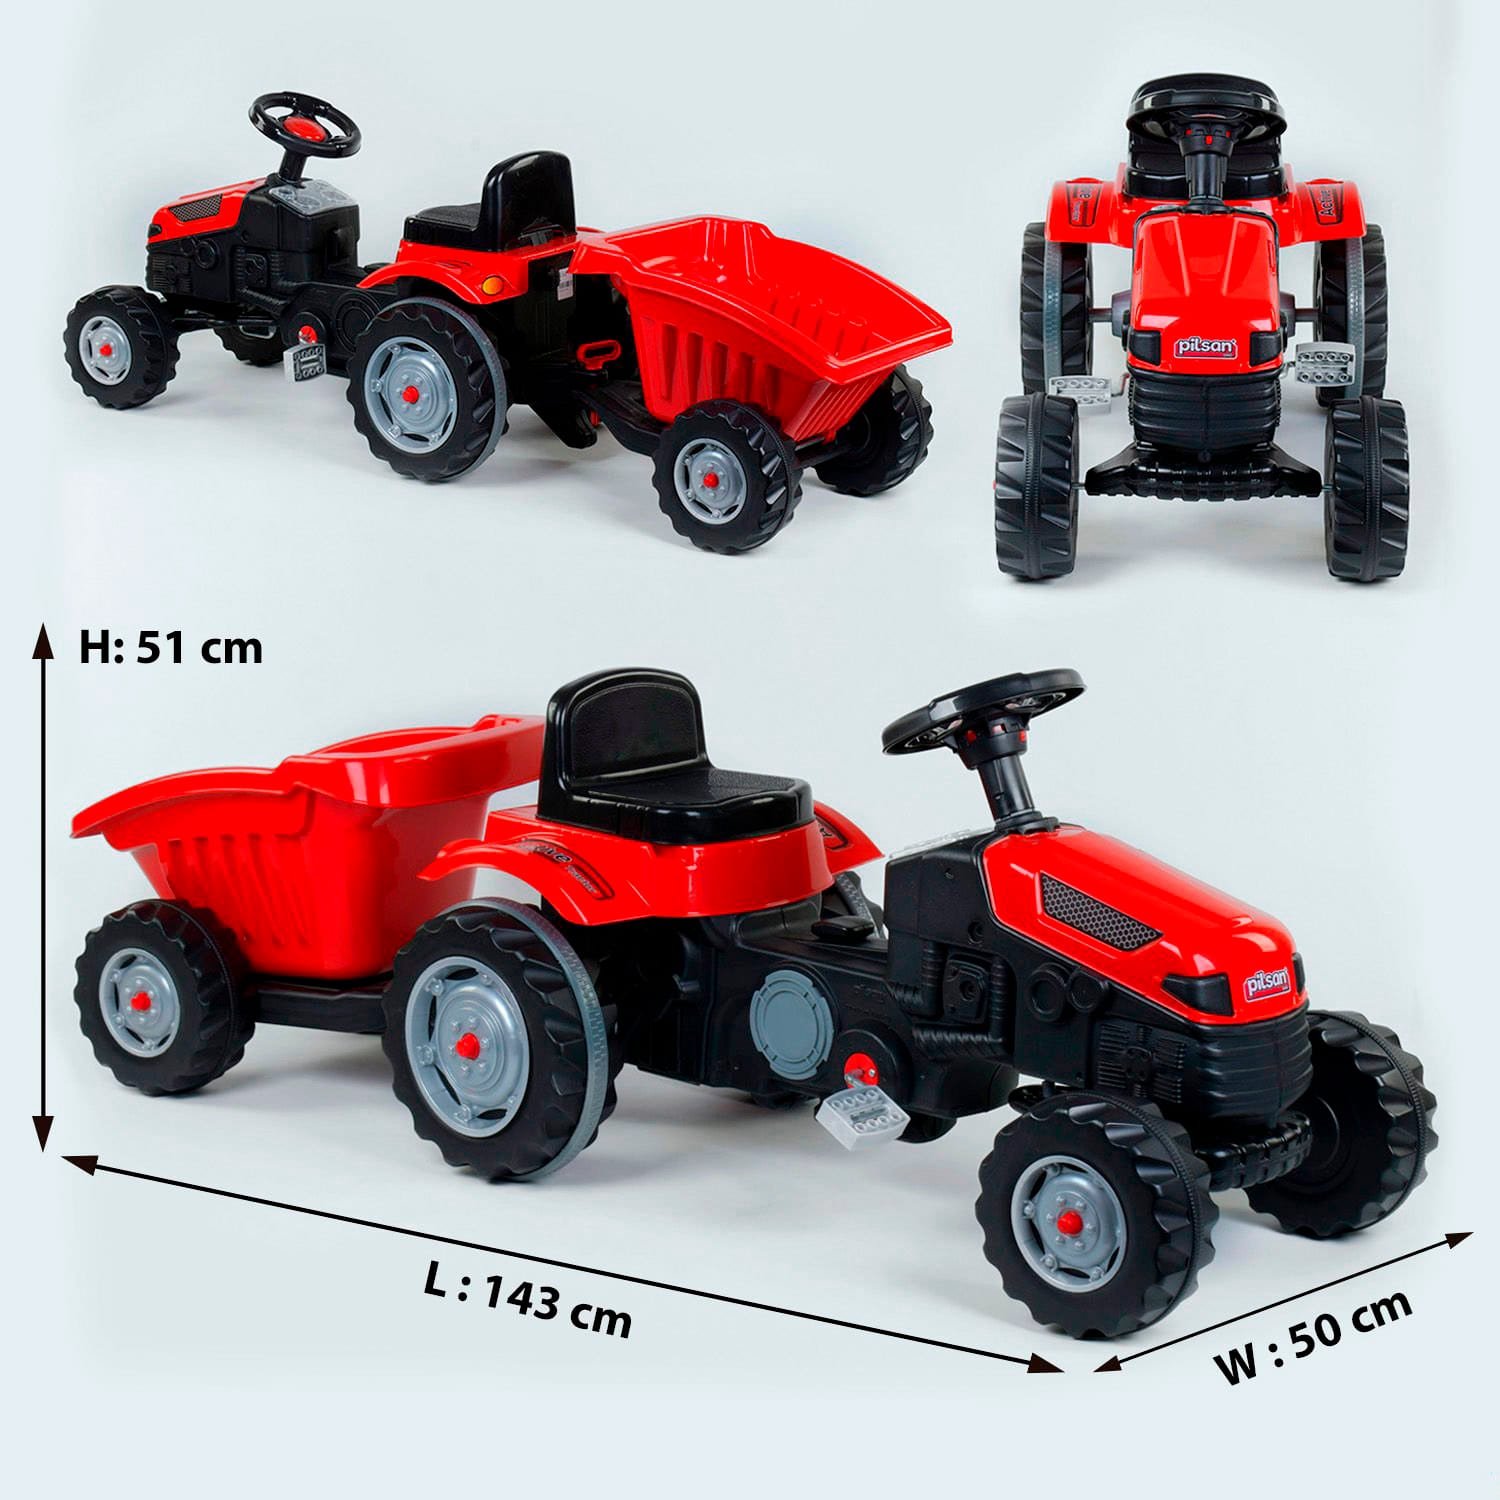 Трактор педальный с прицепом Pilsan (07-316) RED клаксон на руле, сидение регулируемое, задние колеса с резиновыми накладками